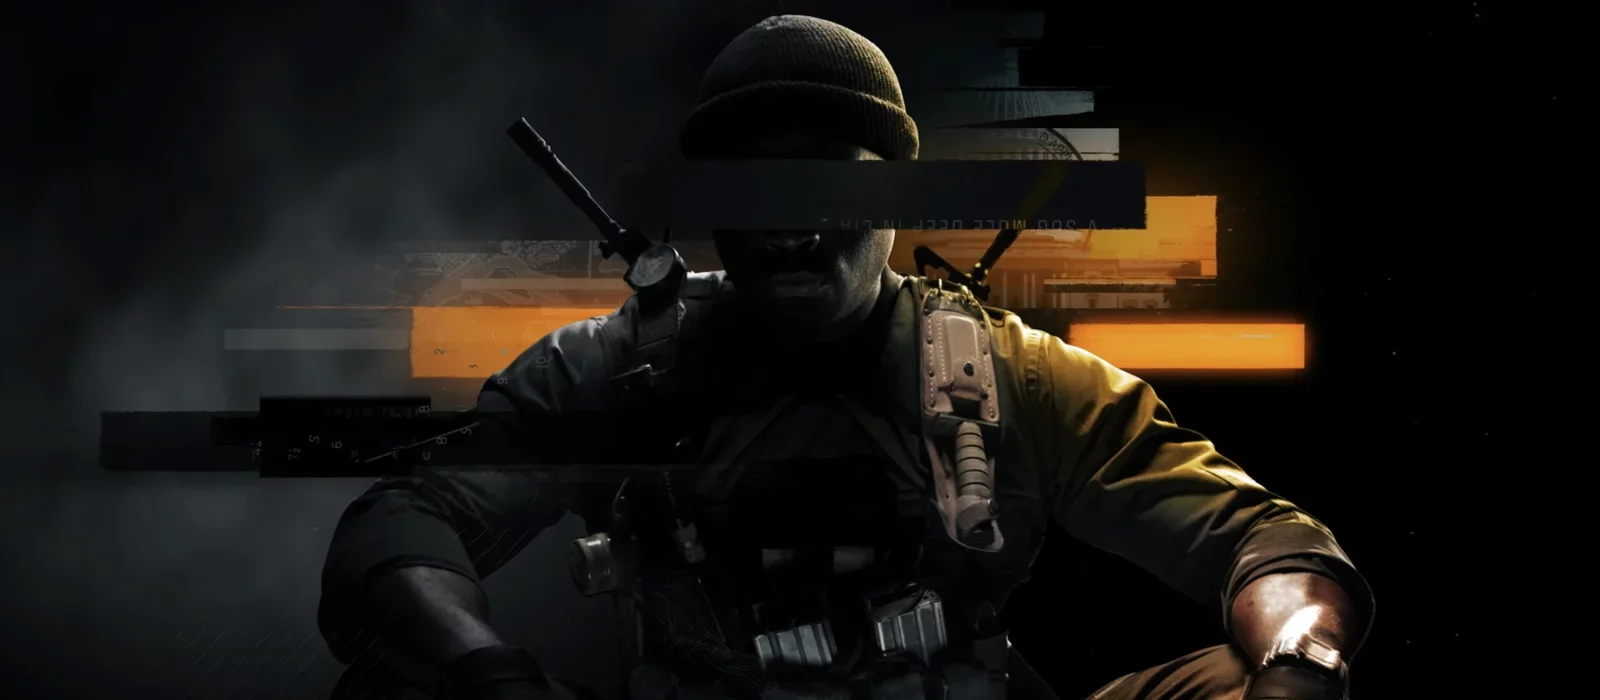 Вышел официальный трейлер очередной части Call of Duty: Black Ops